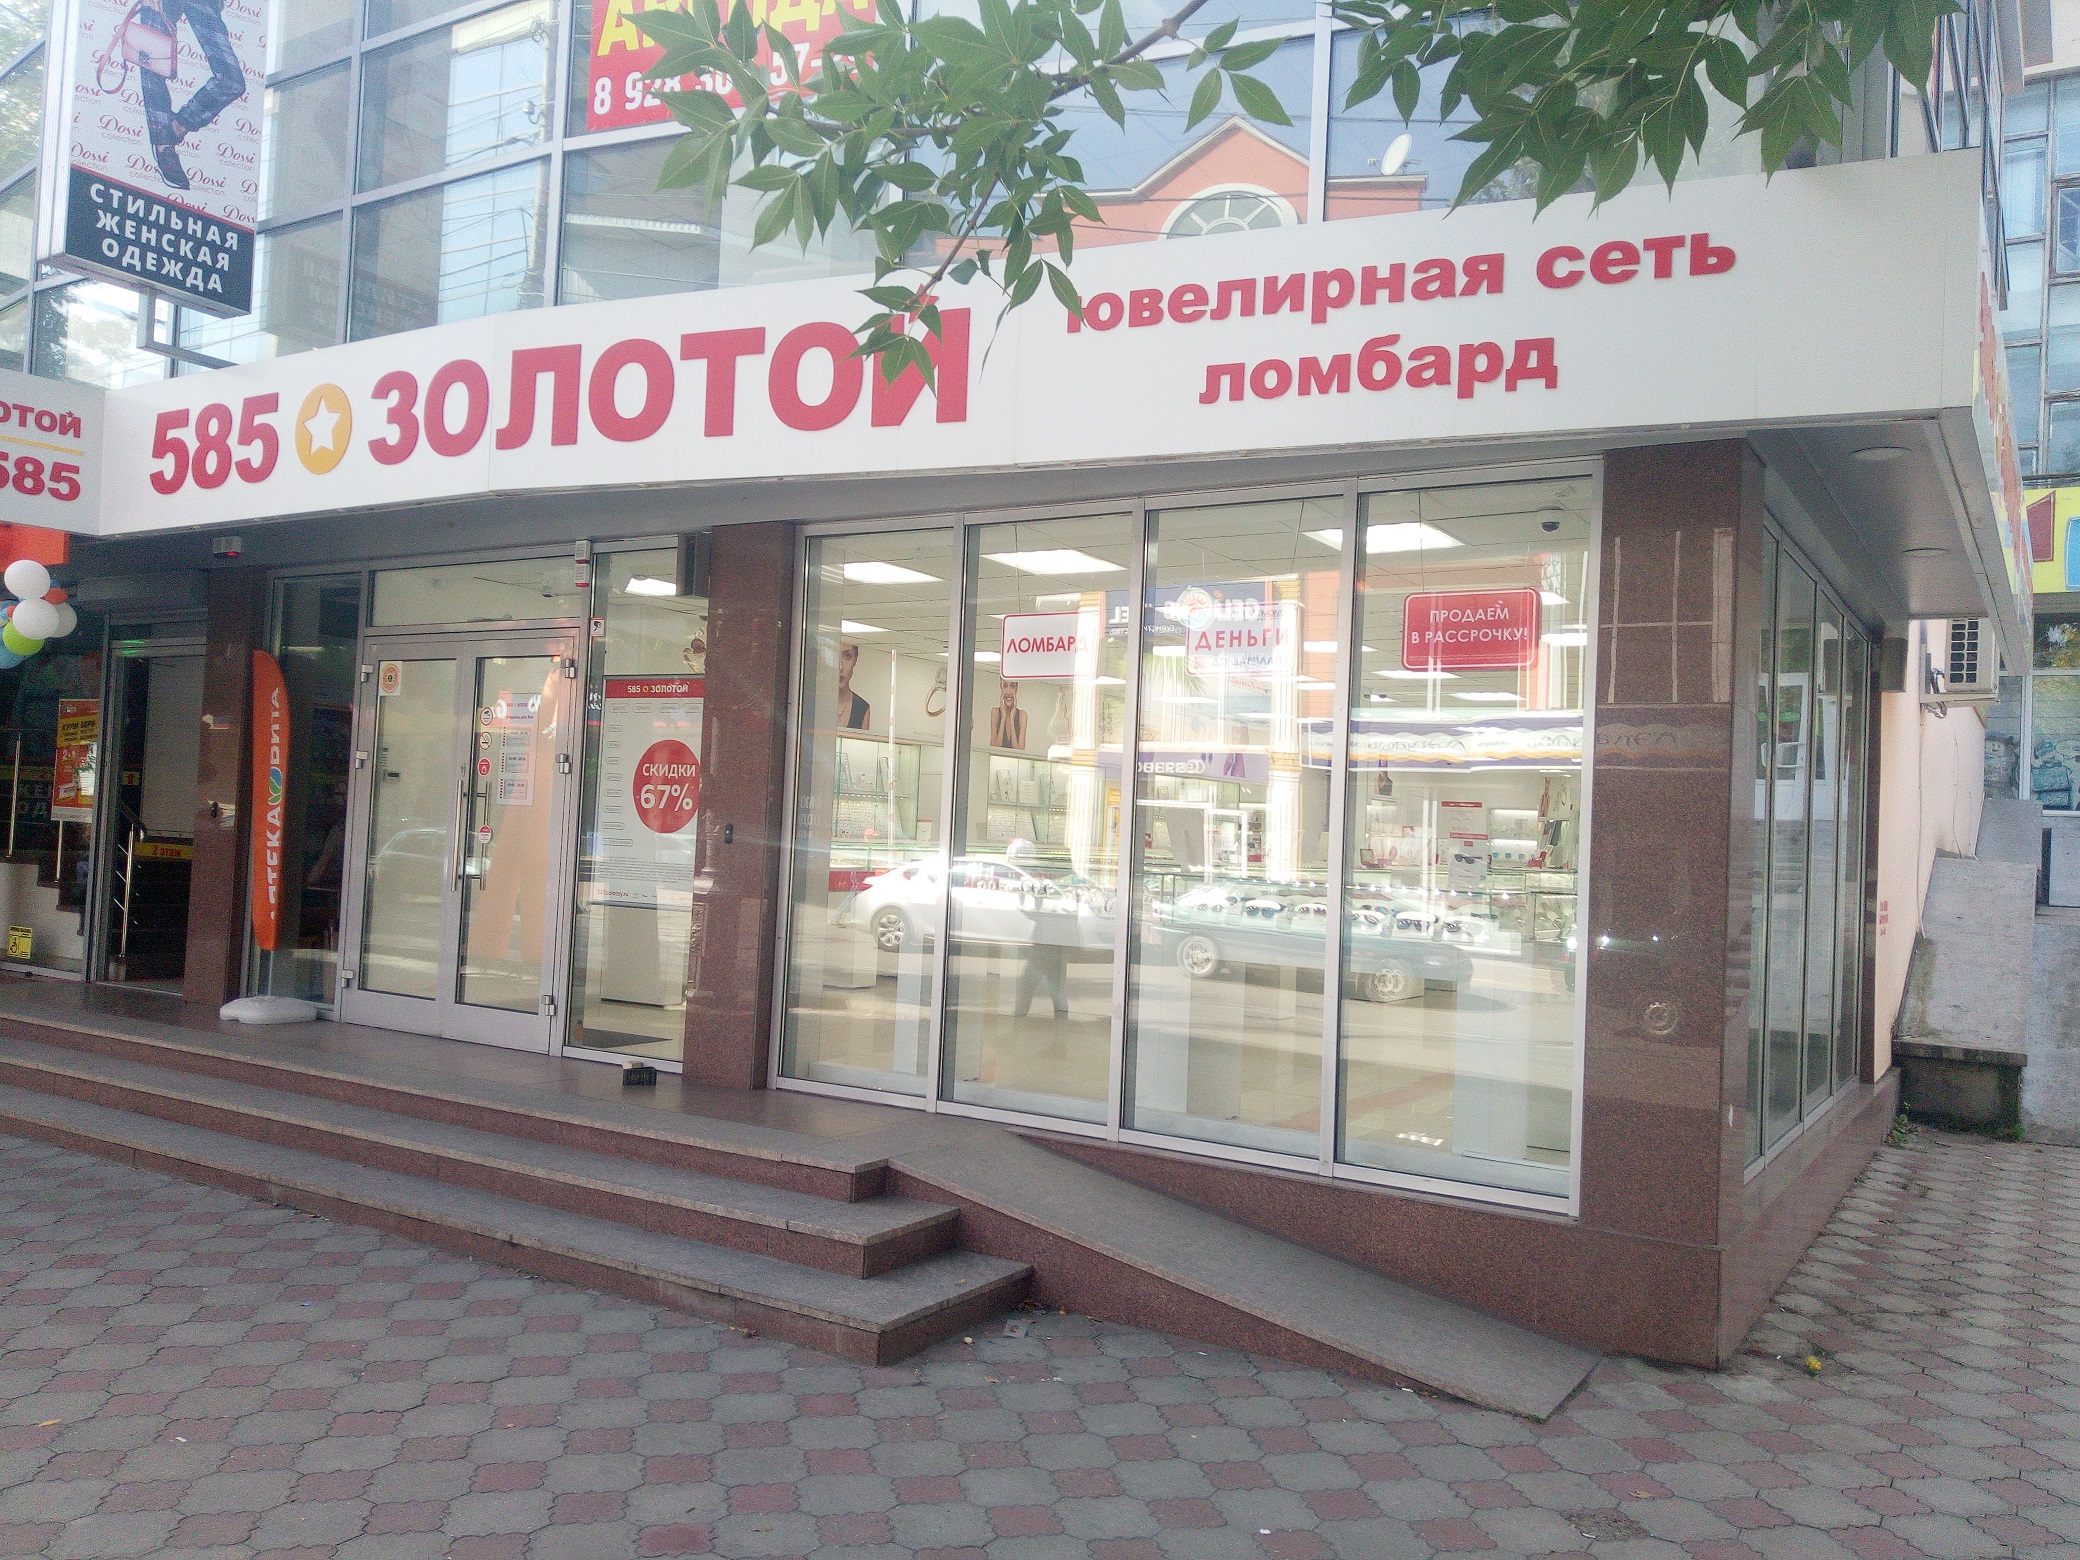 585 Золотой Интернет Магазин Москва